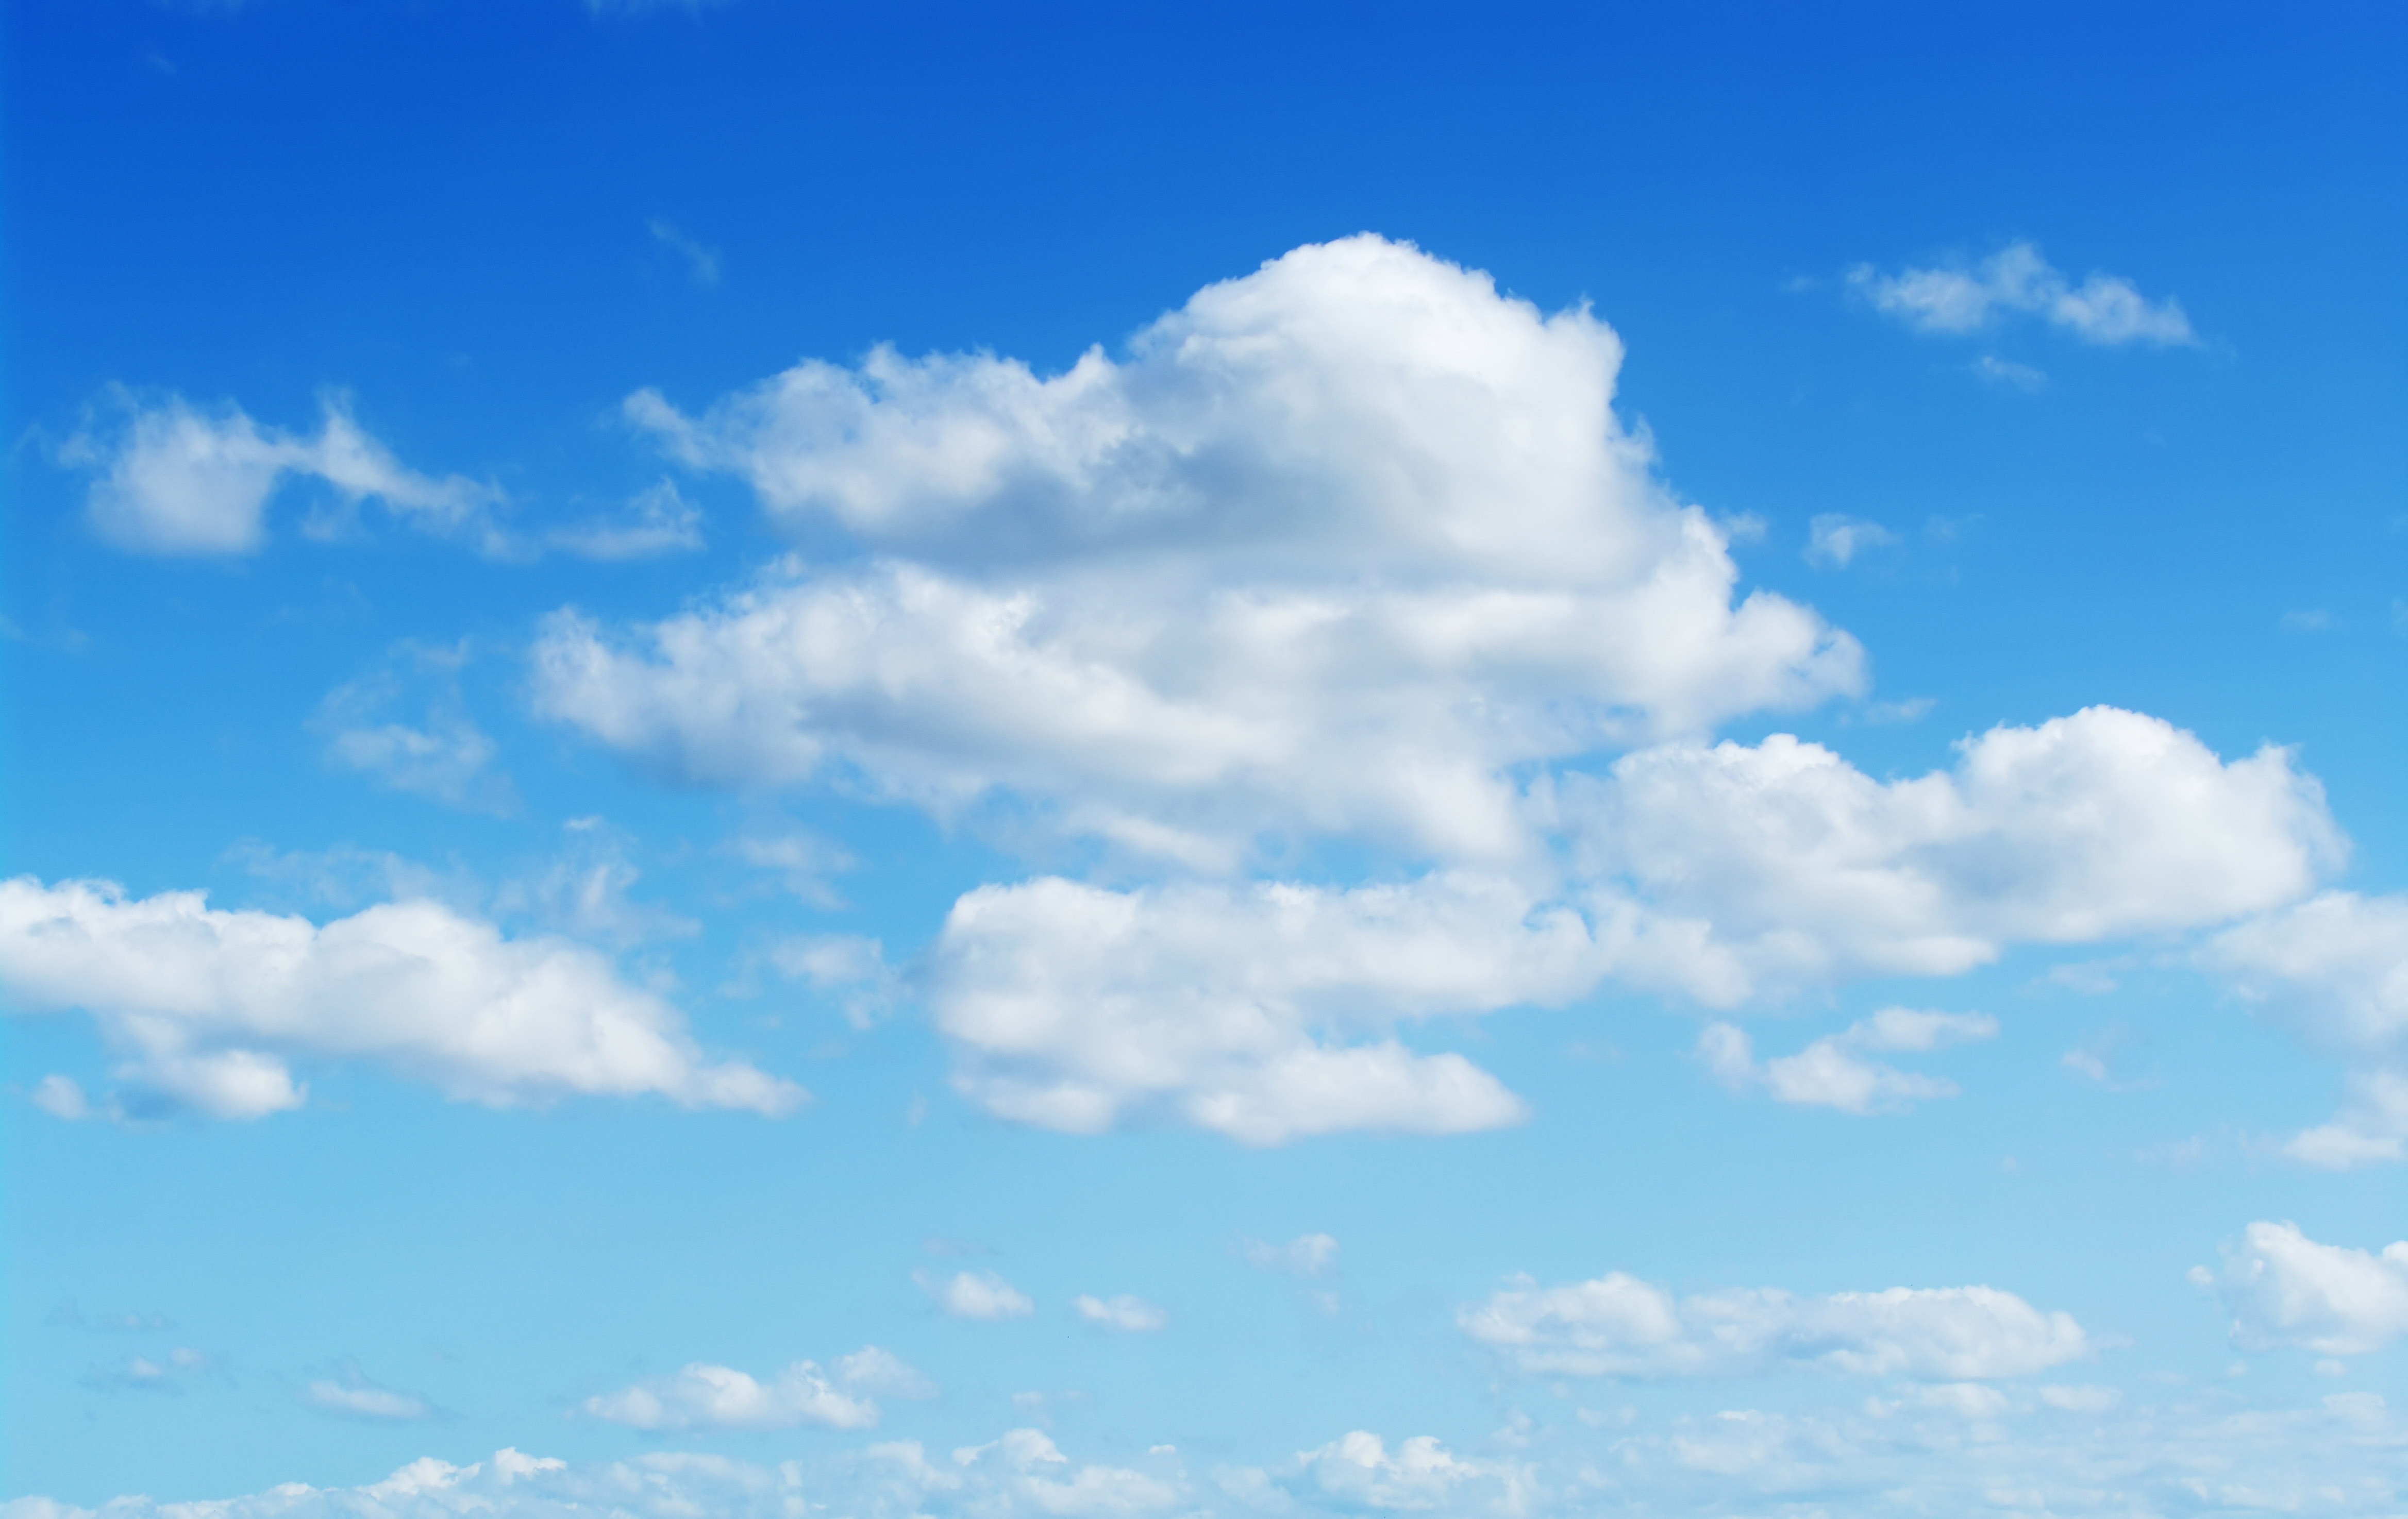 Fluffy White Clouds In A Blue Sky by Emrah Turudu